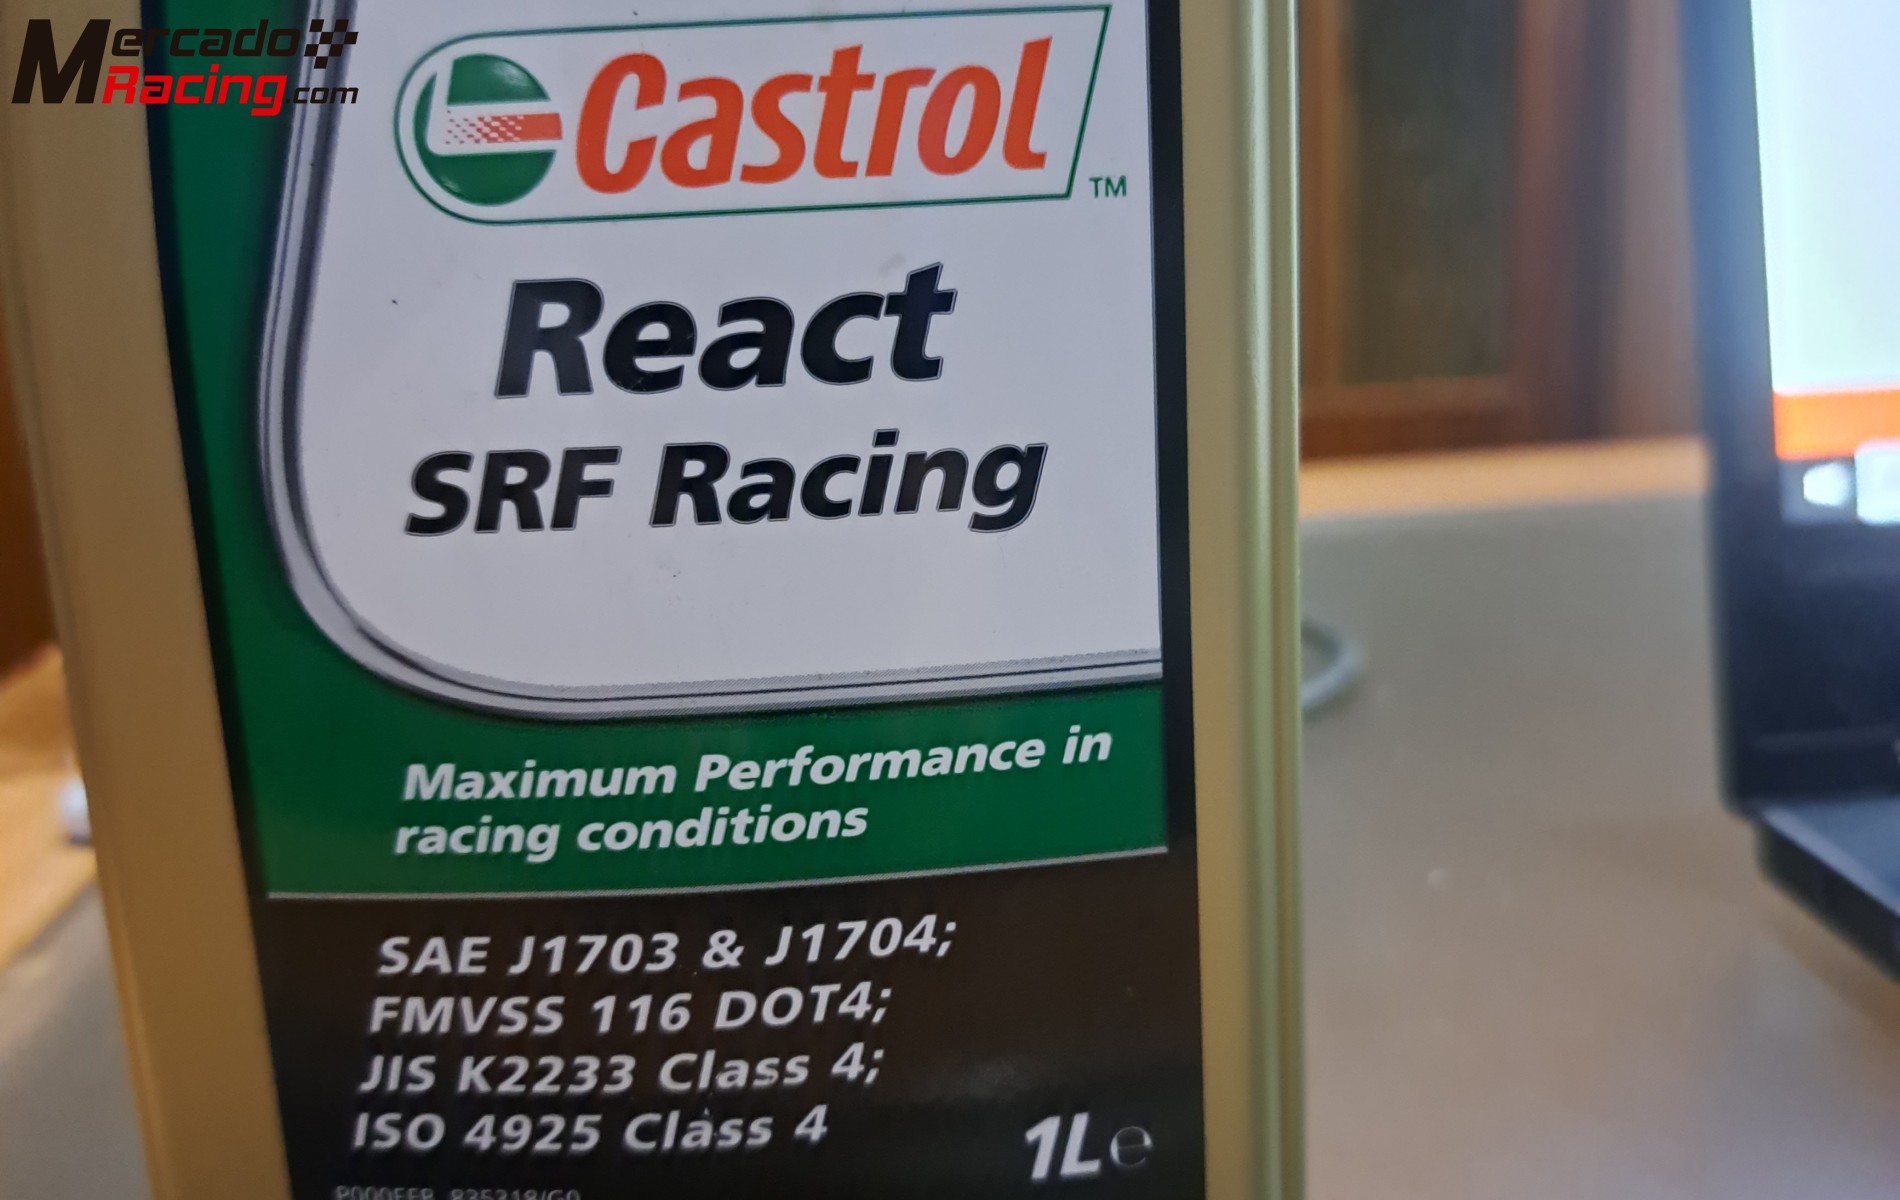 Liquido de frenos castrol react srf racing 1l